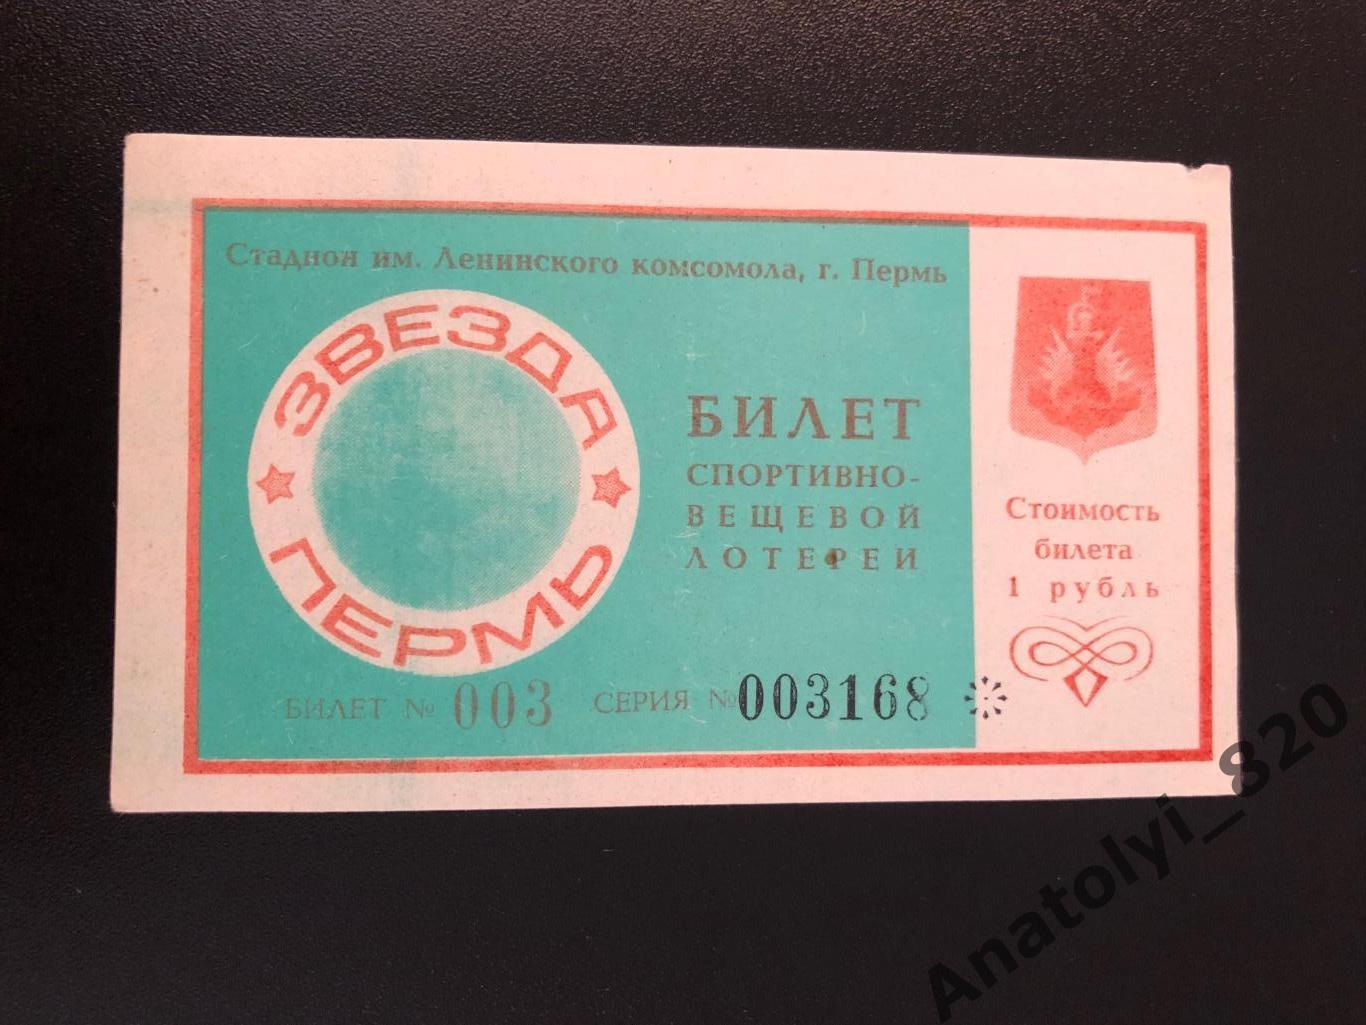 Пермь. Билет спортивно-вещевой лотереи 1988 год